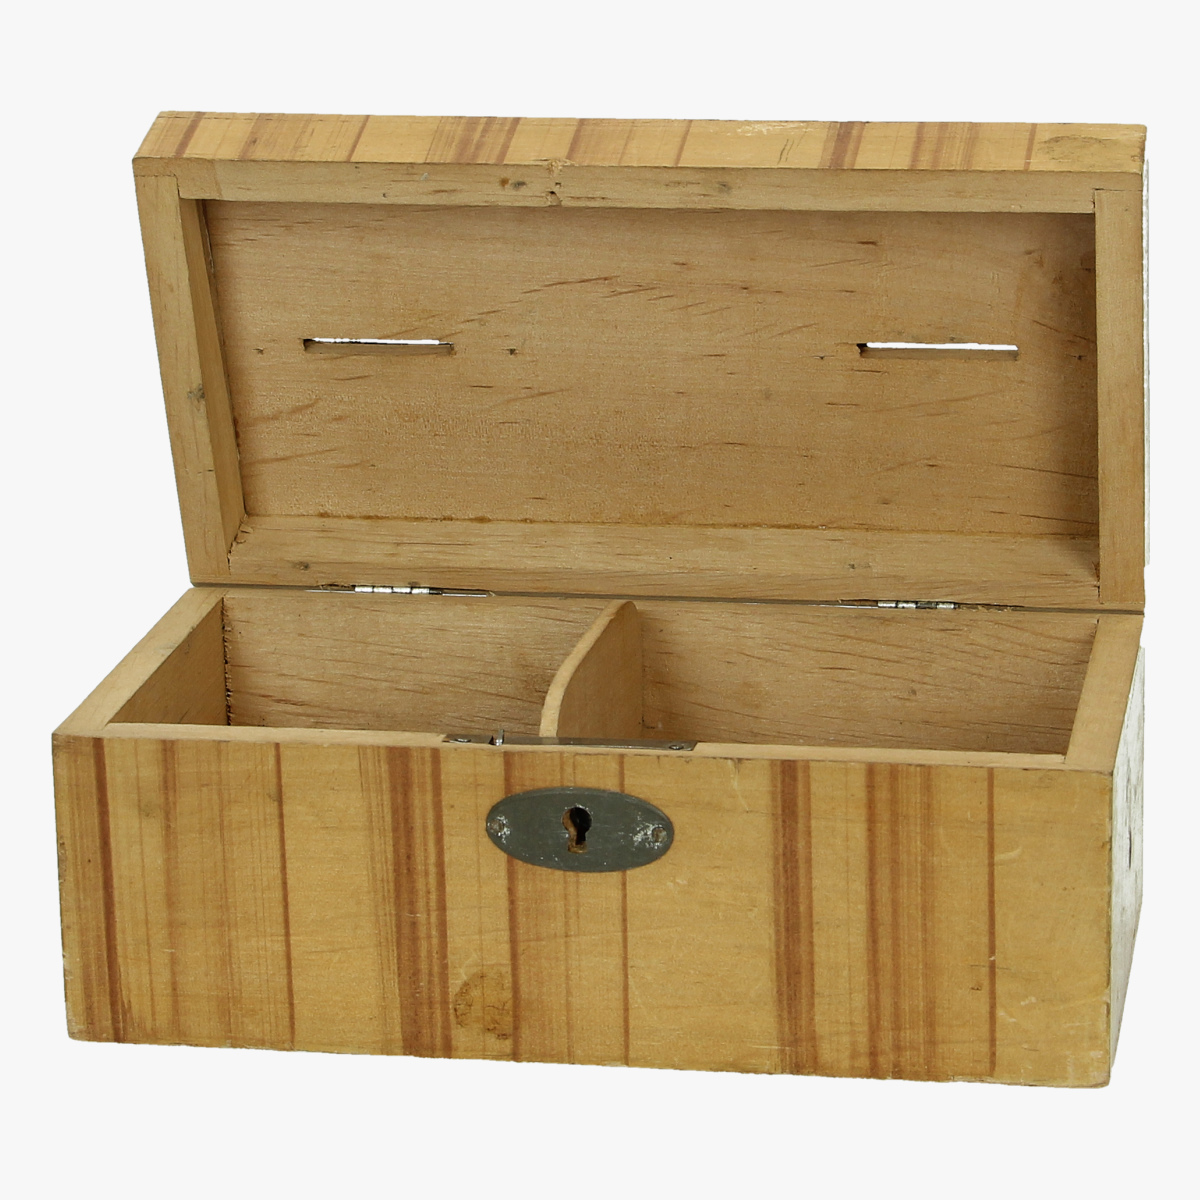 Afbeeldingen van spaarpot houten kistje